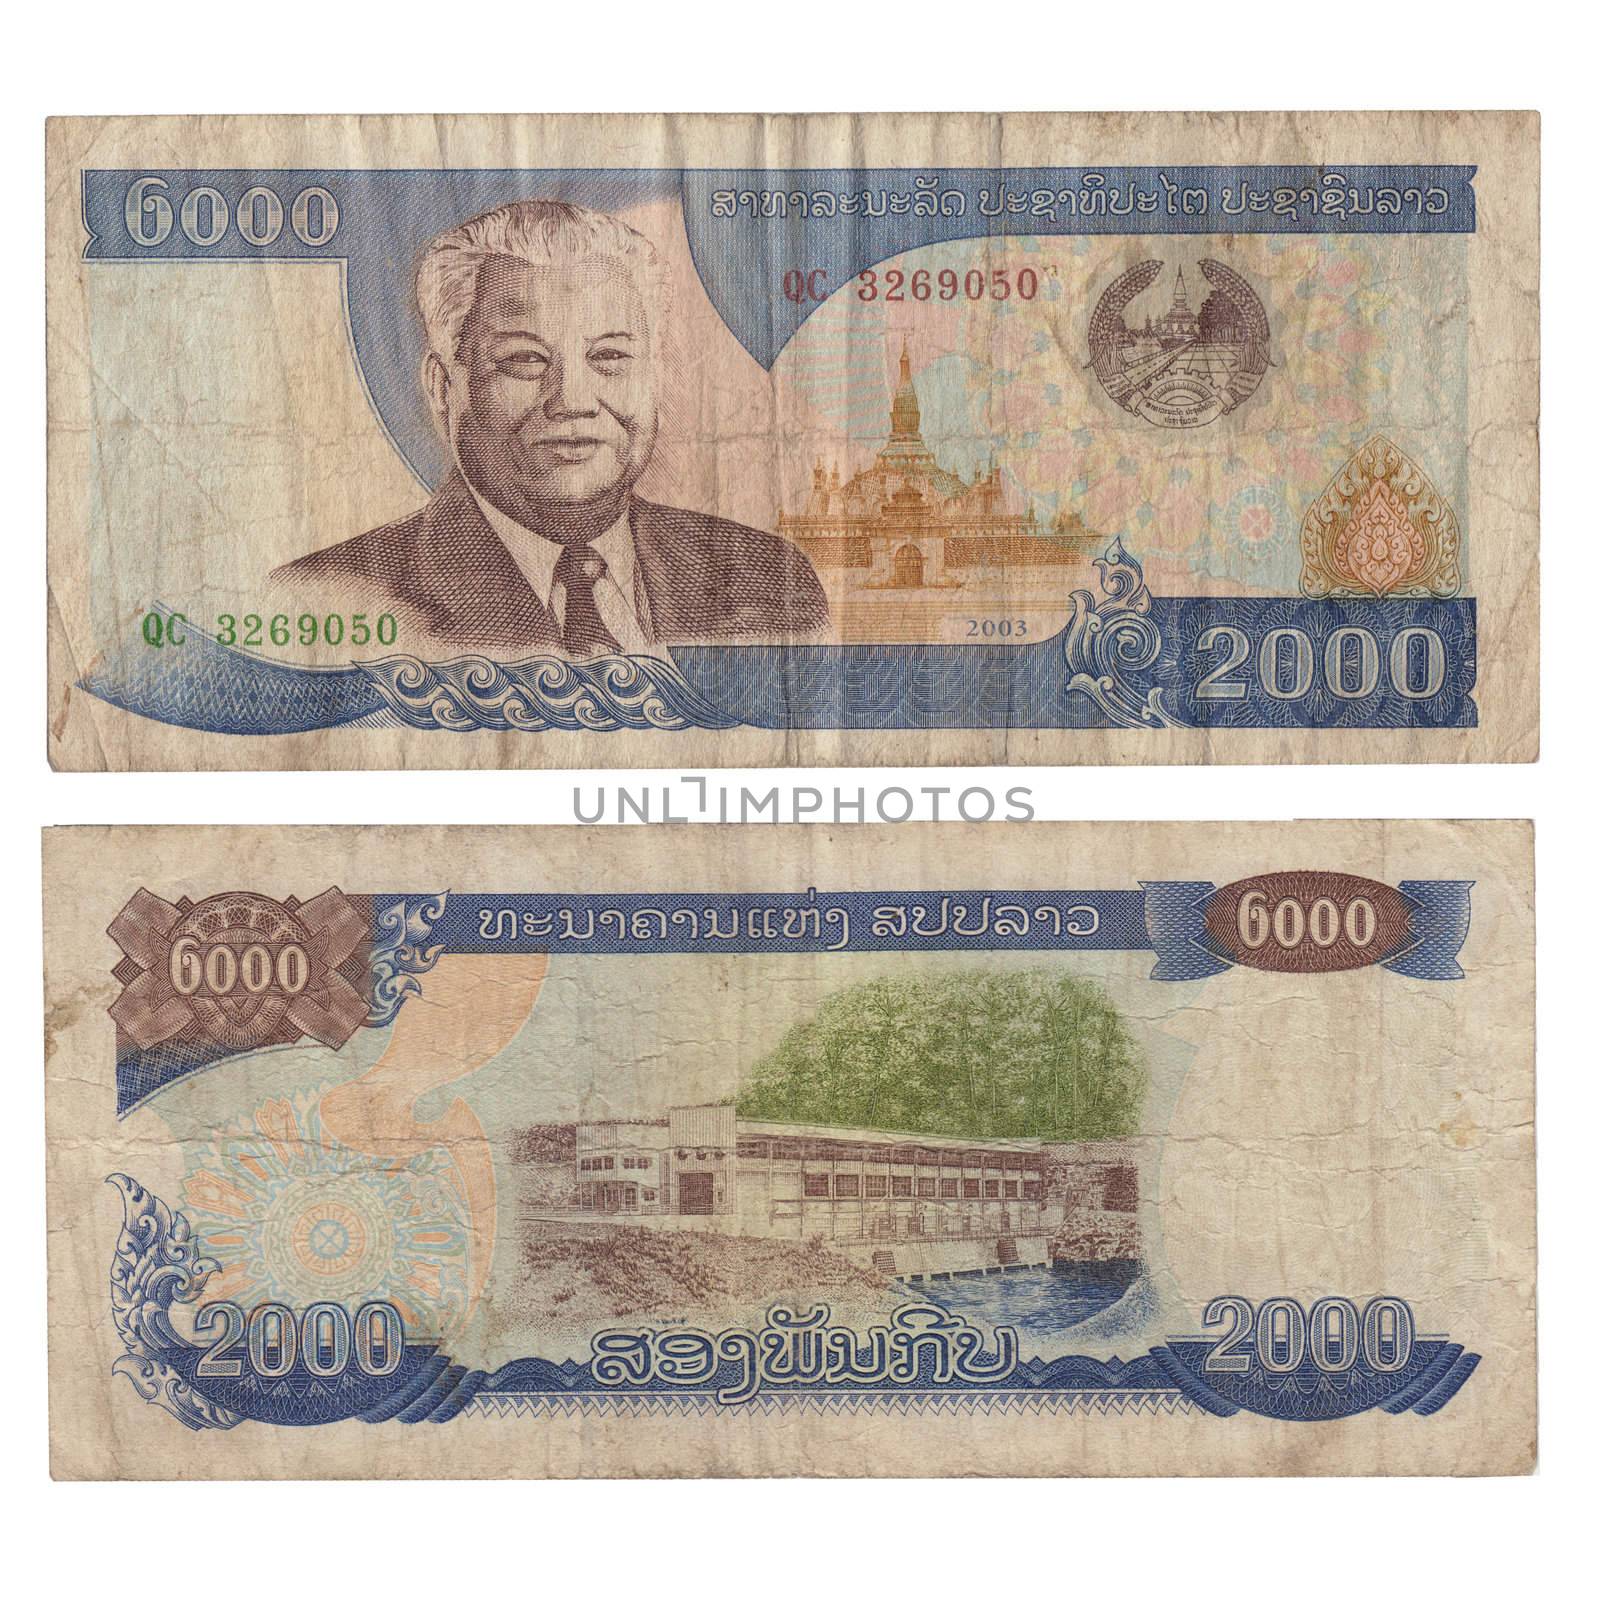 2000 kip bill of Laos by Lirch